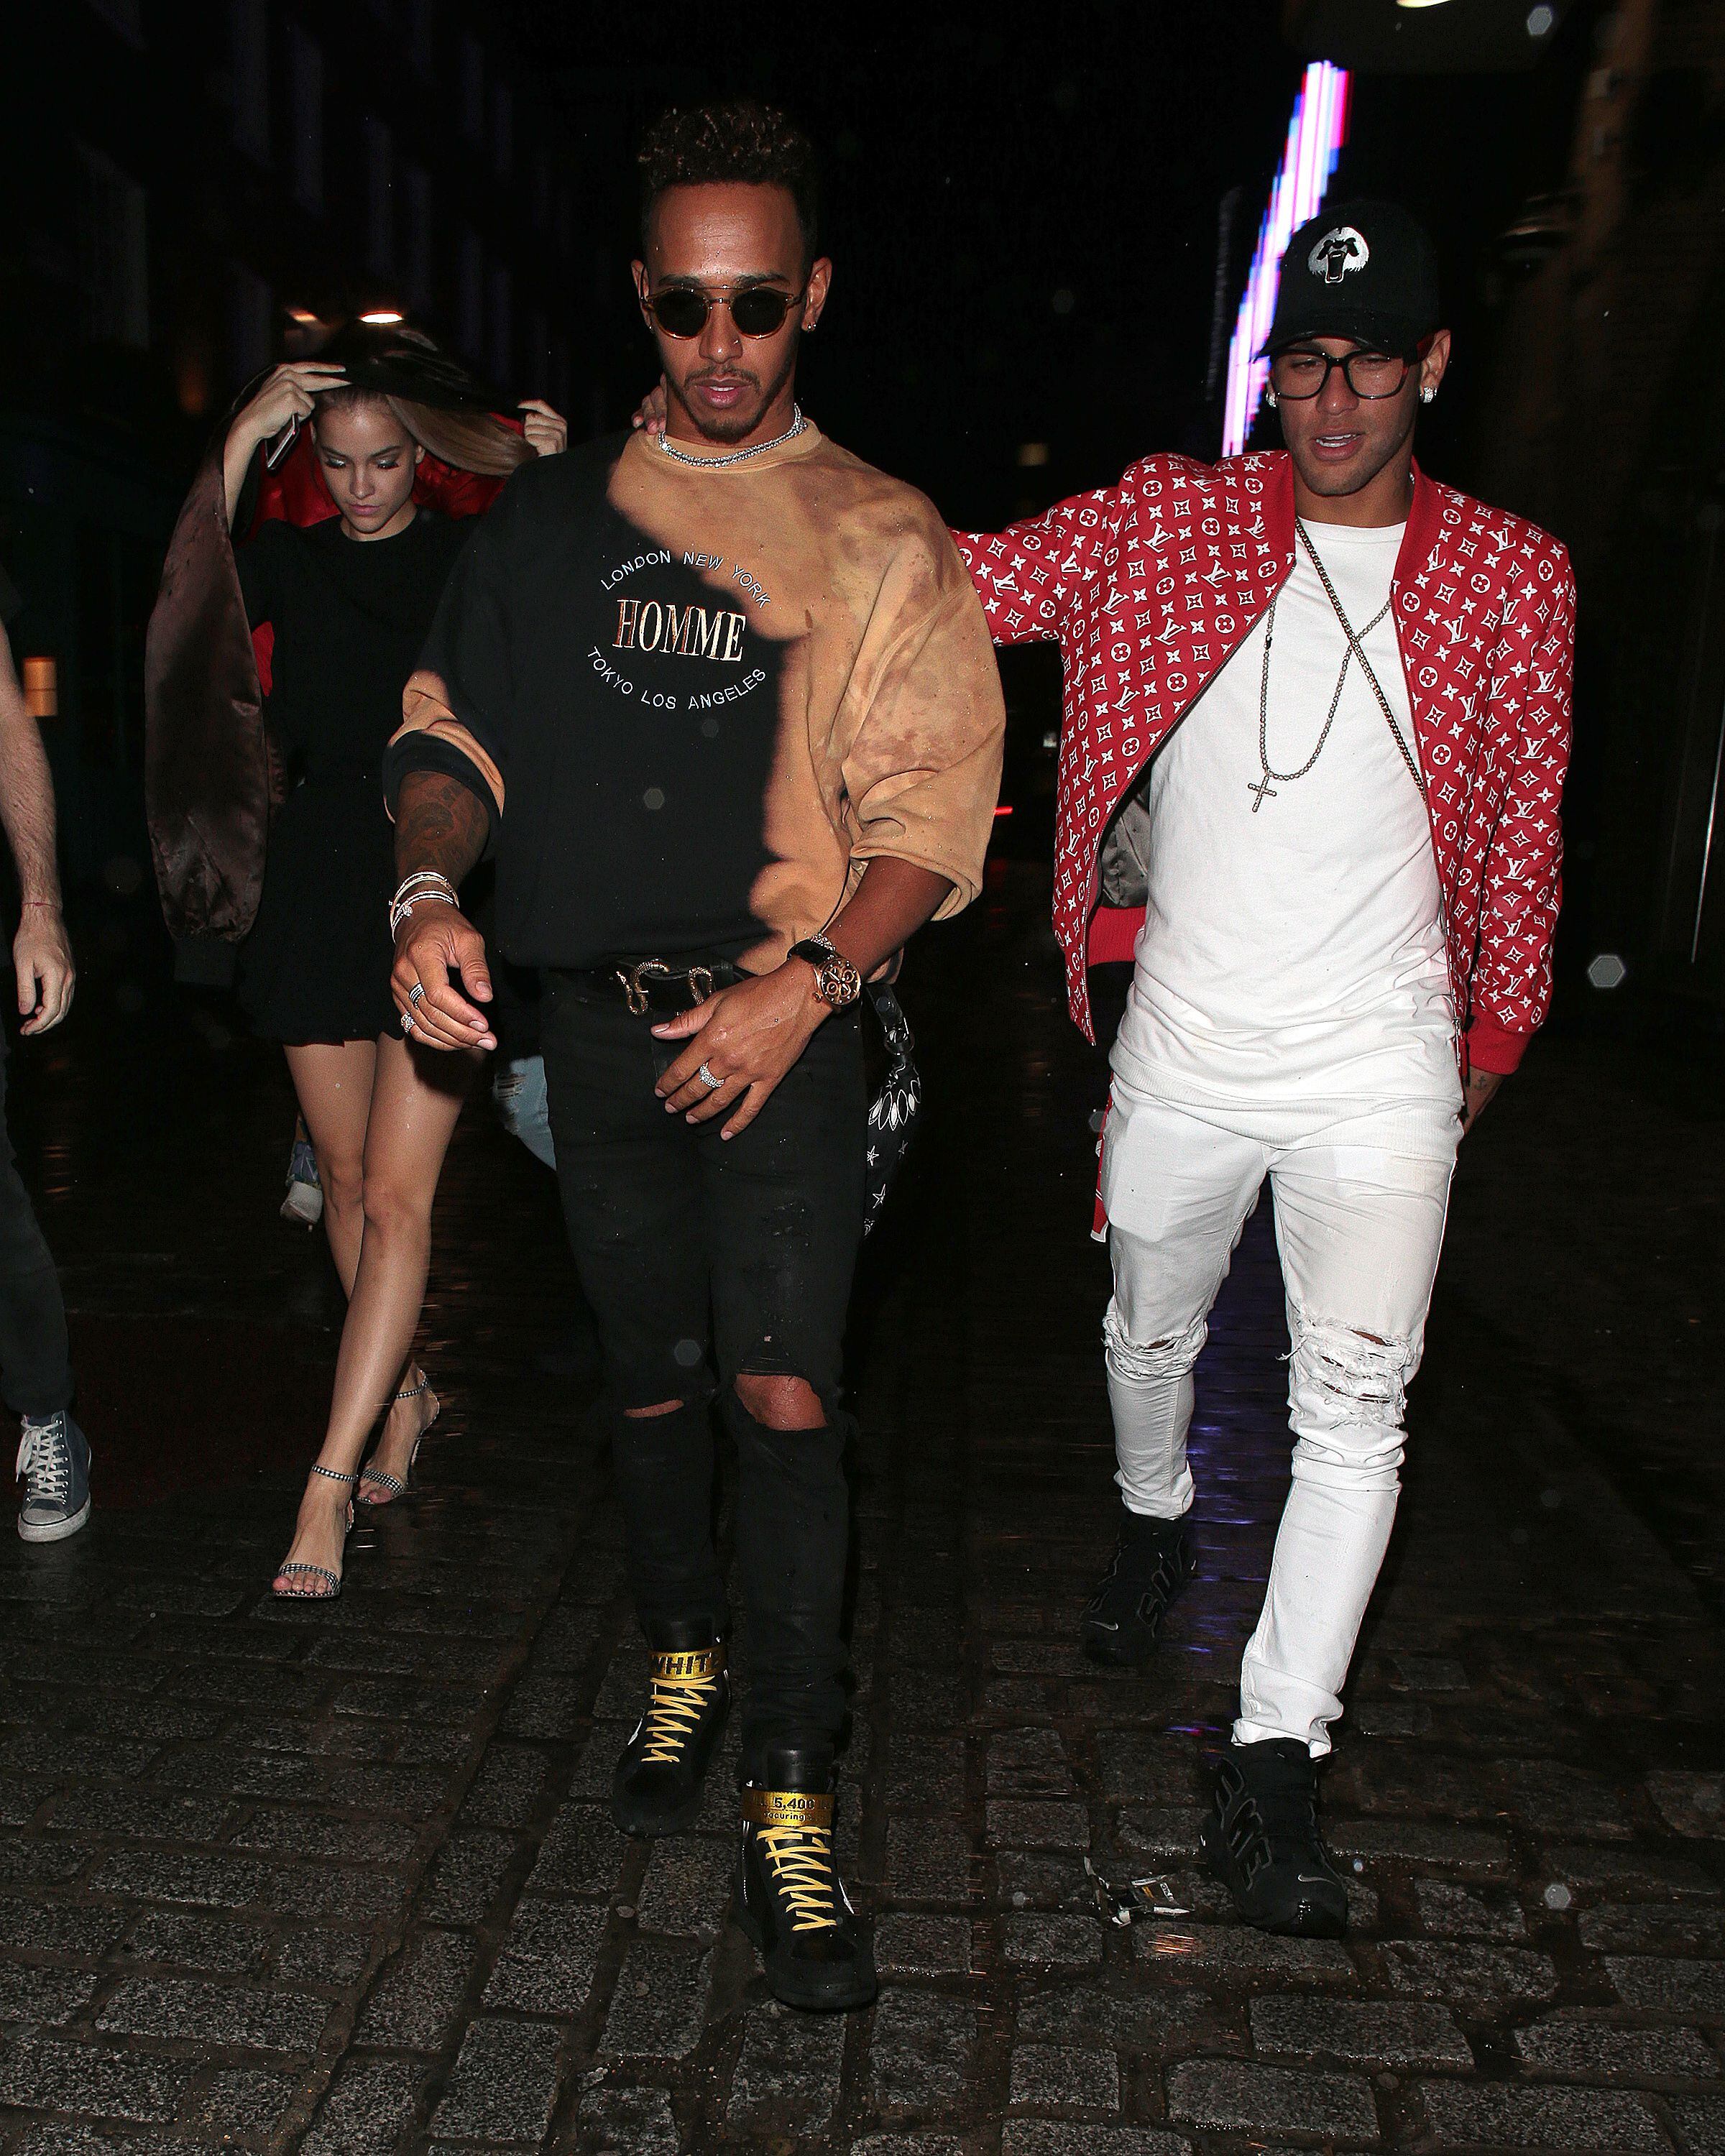 Lewis Hamilton e Neymar Jr., dois dos esportistas mais questionados pelo público, se divertem juntos na noite de Barcelona, em 2017.